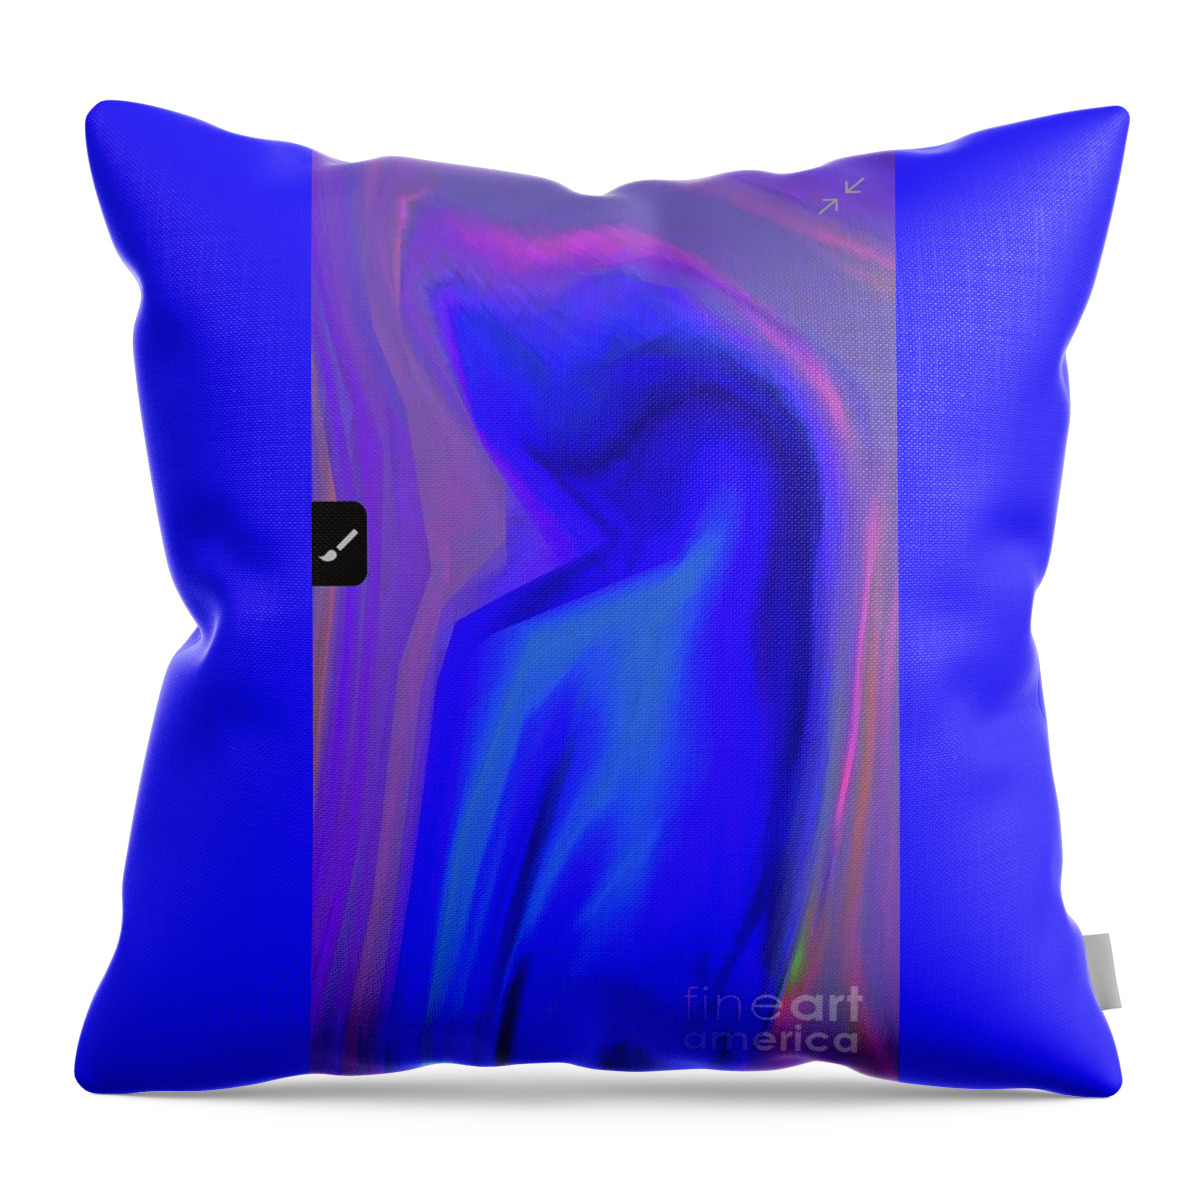  Throw Pillow featuring the digital art Blue 1 by Glenn Hernandez